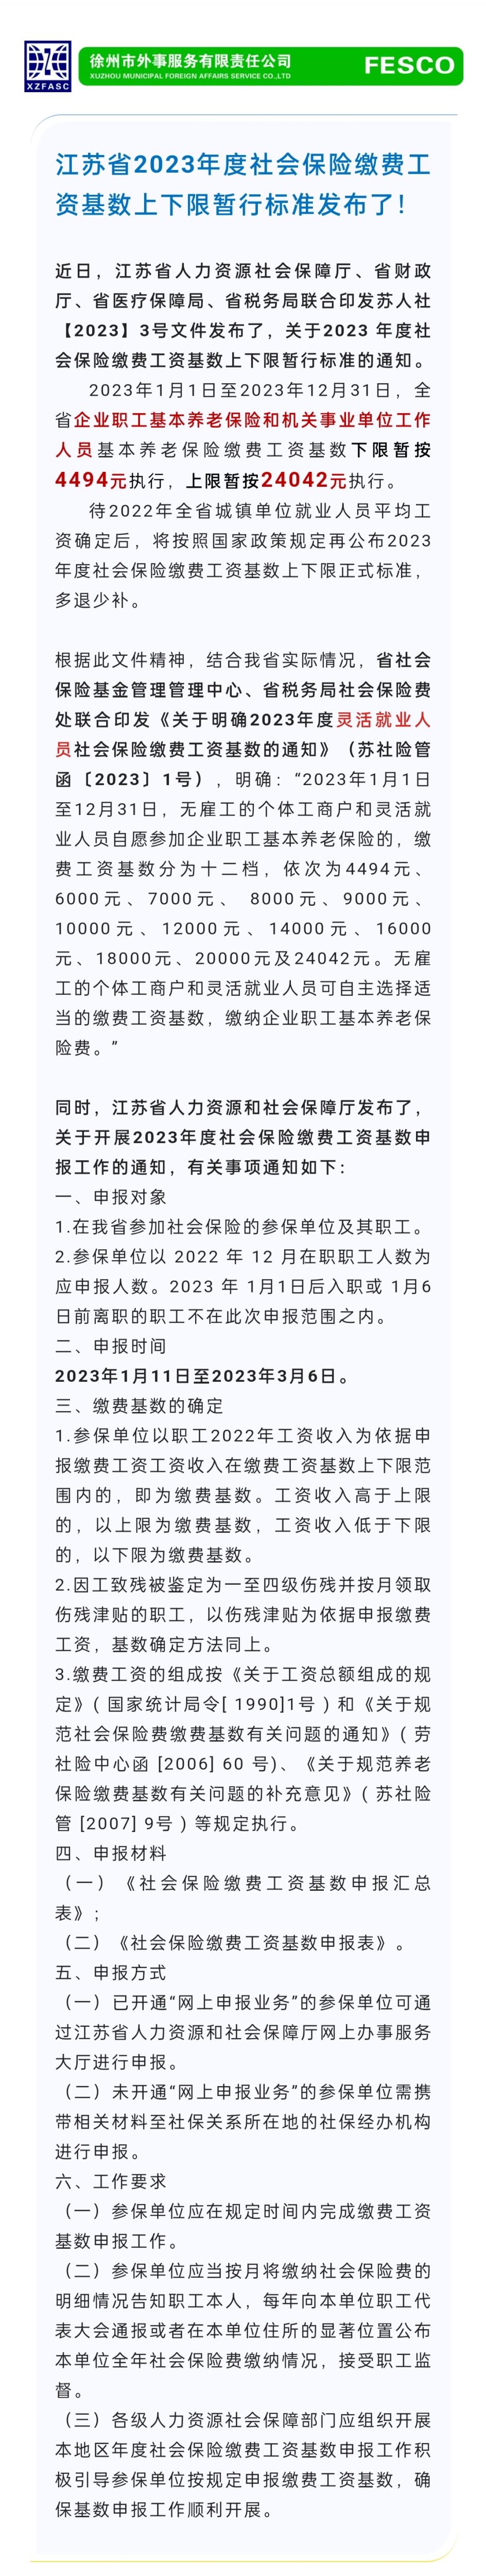 2023.1.11 江苏省2023年度社会保险缴费工资基数上下限暂行标准发布了！.jpg